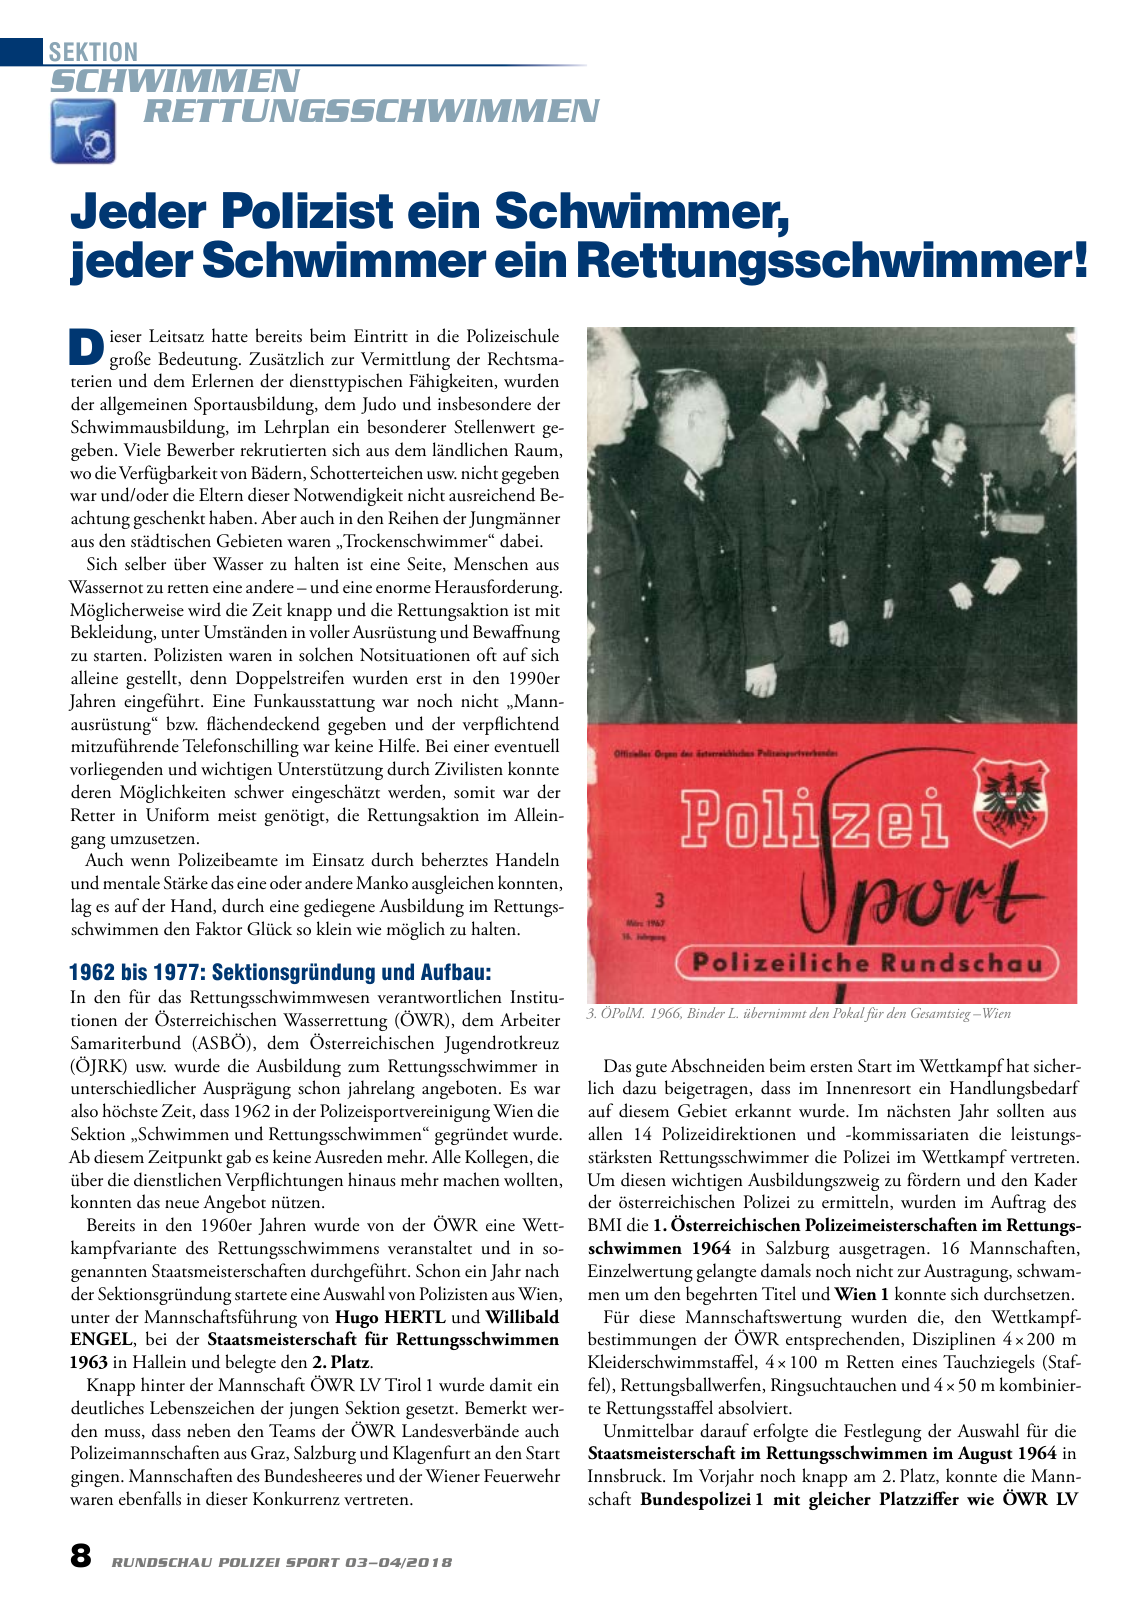 Vorschau Rundschau Polizei Sport 03-04/2018 Seite 8